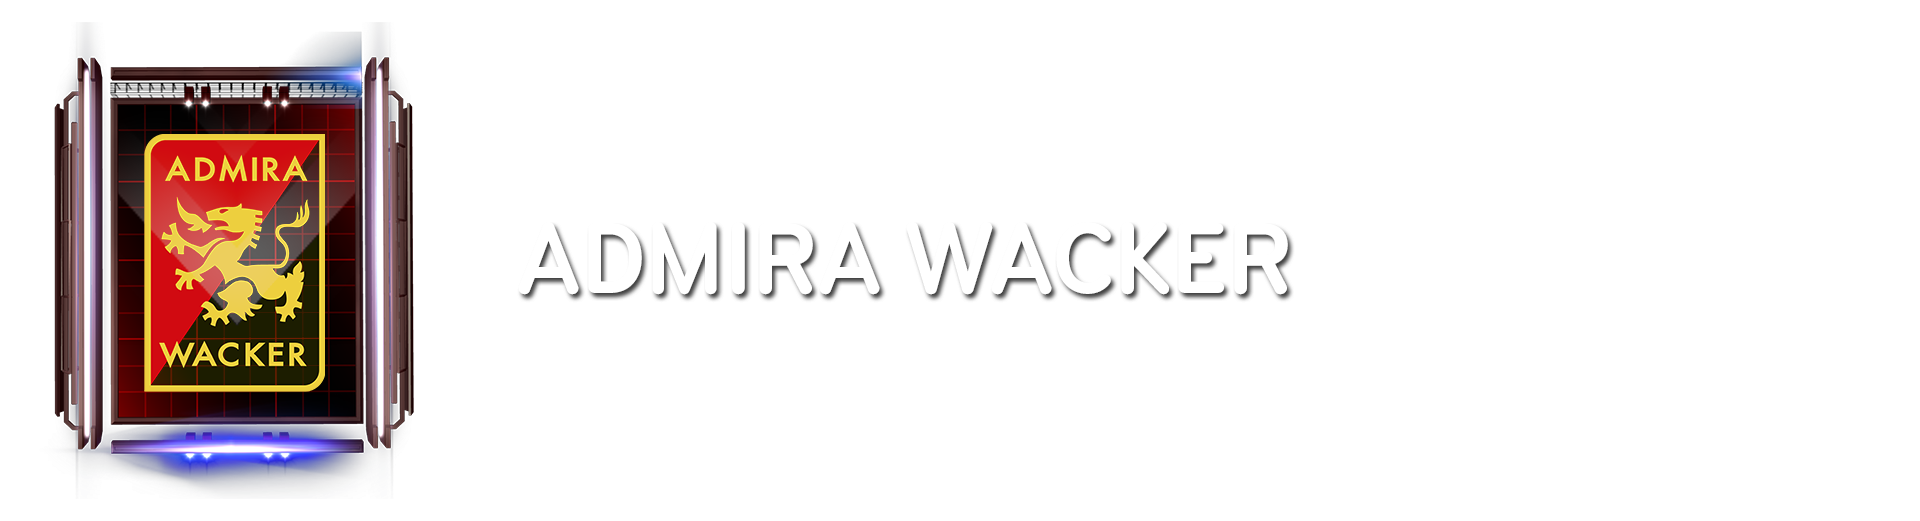 admira_wacker_headliner